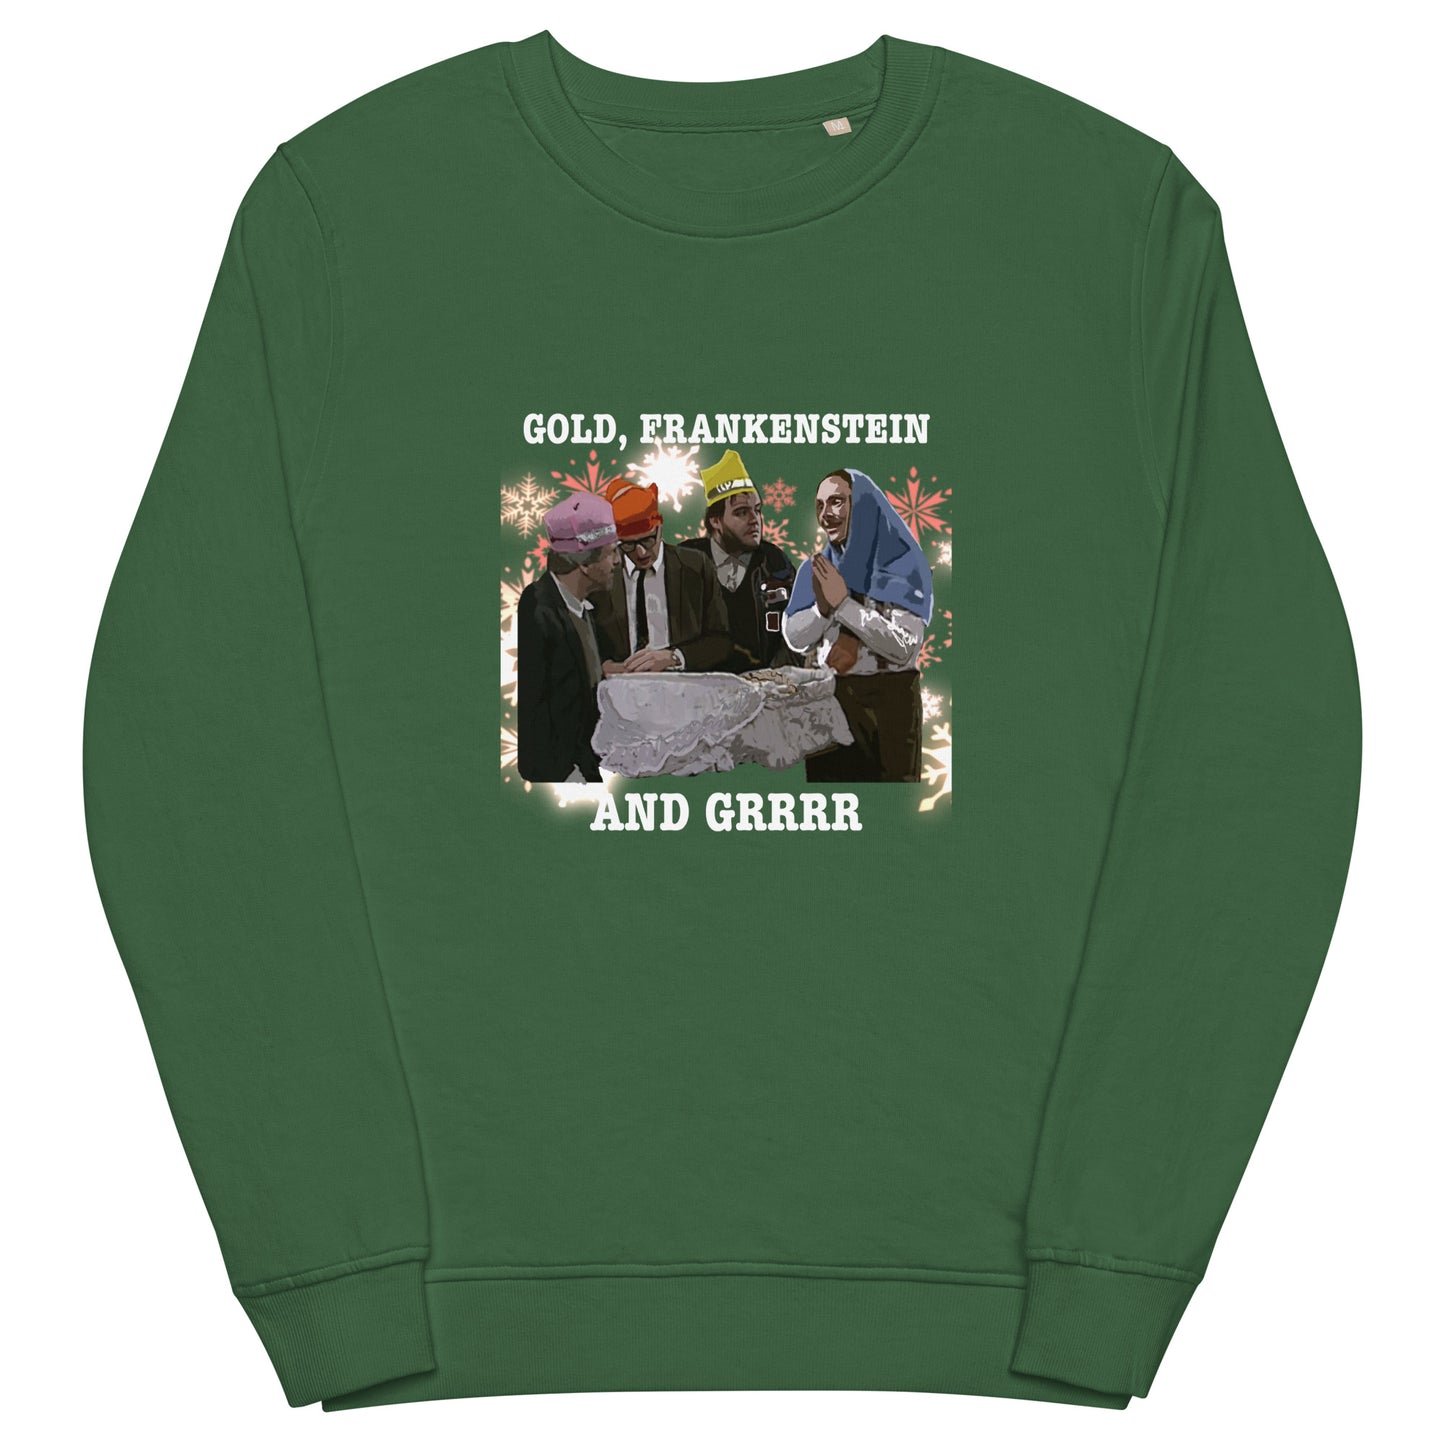 3 kings - Unisex organic sweatshirt